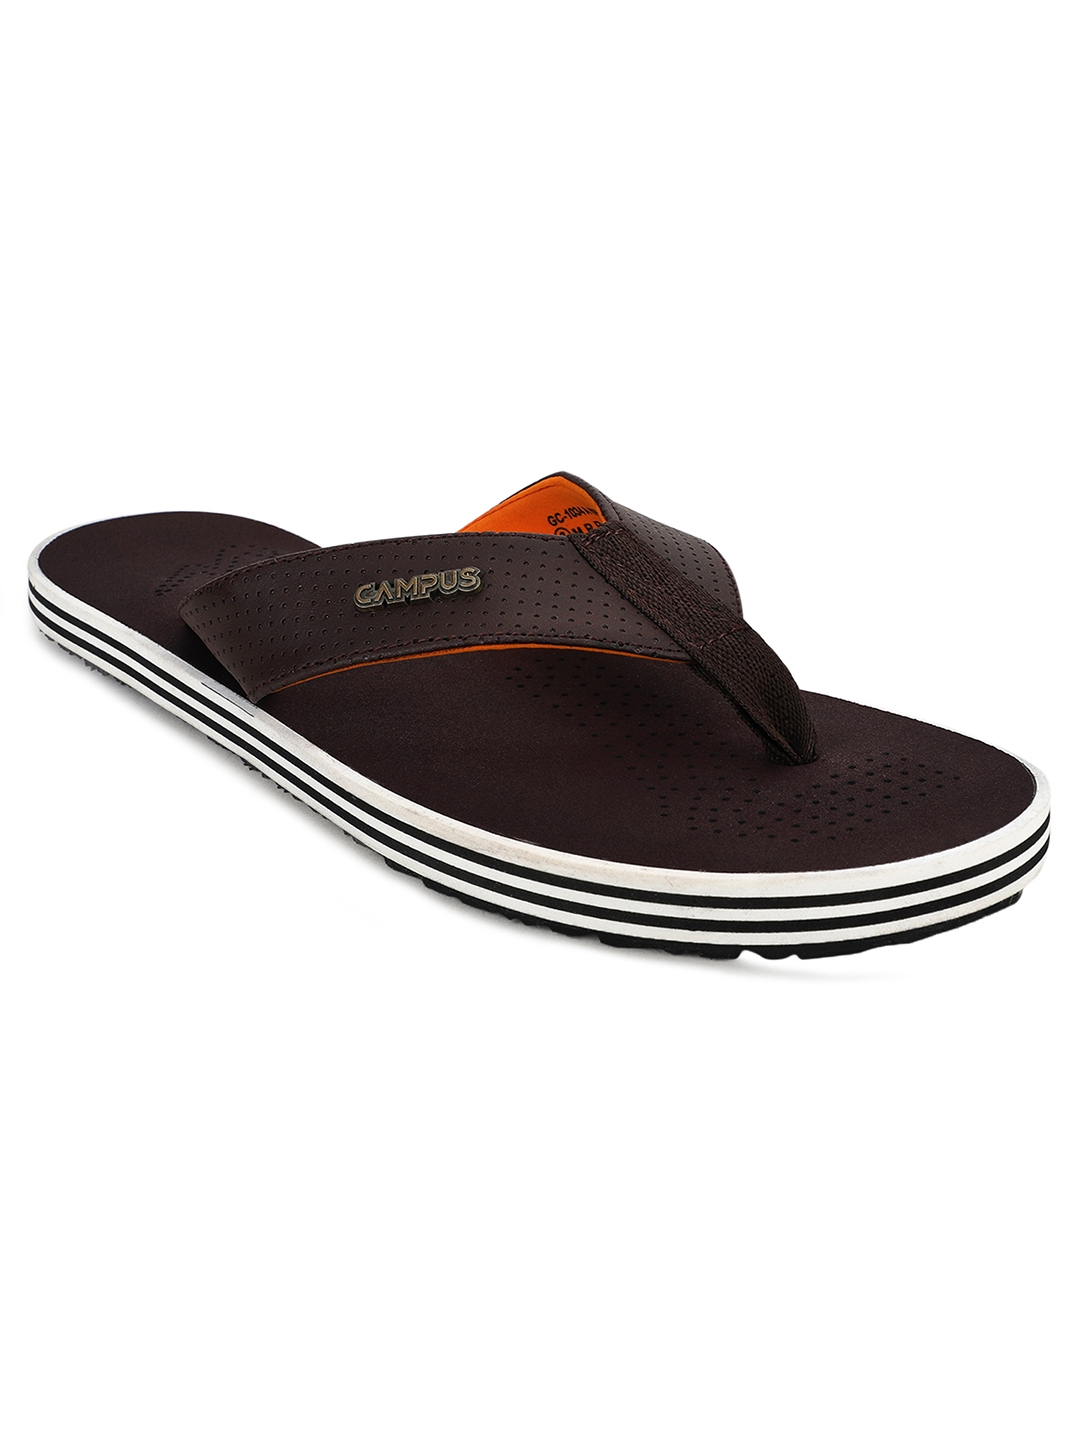 Campus Shoes | GC-1034A